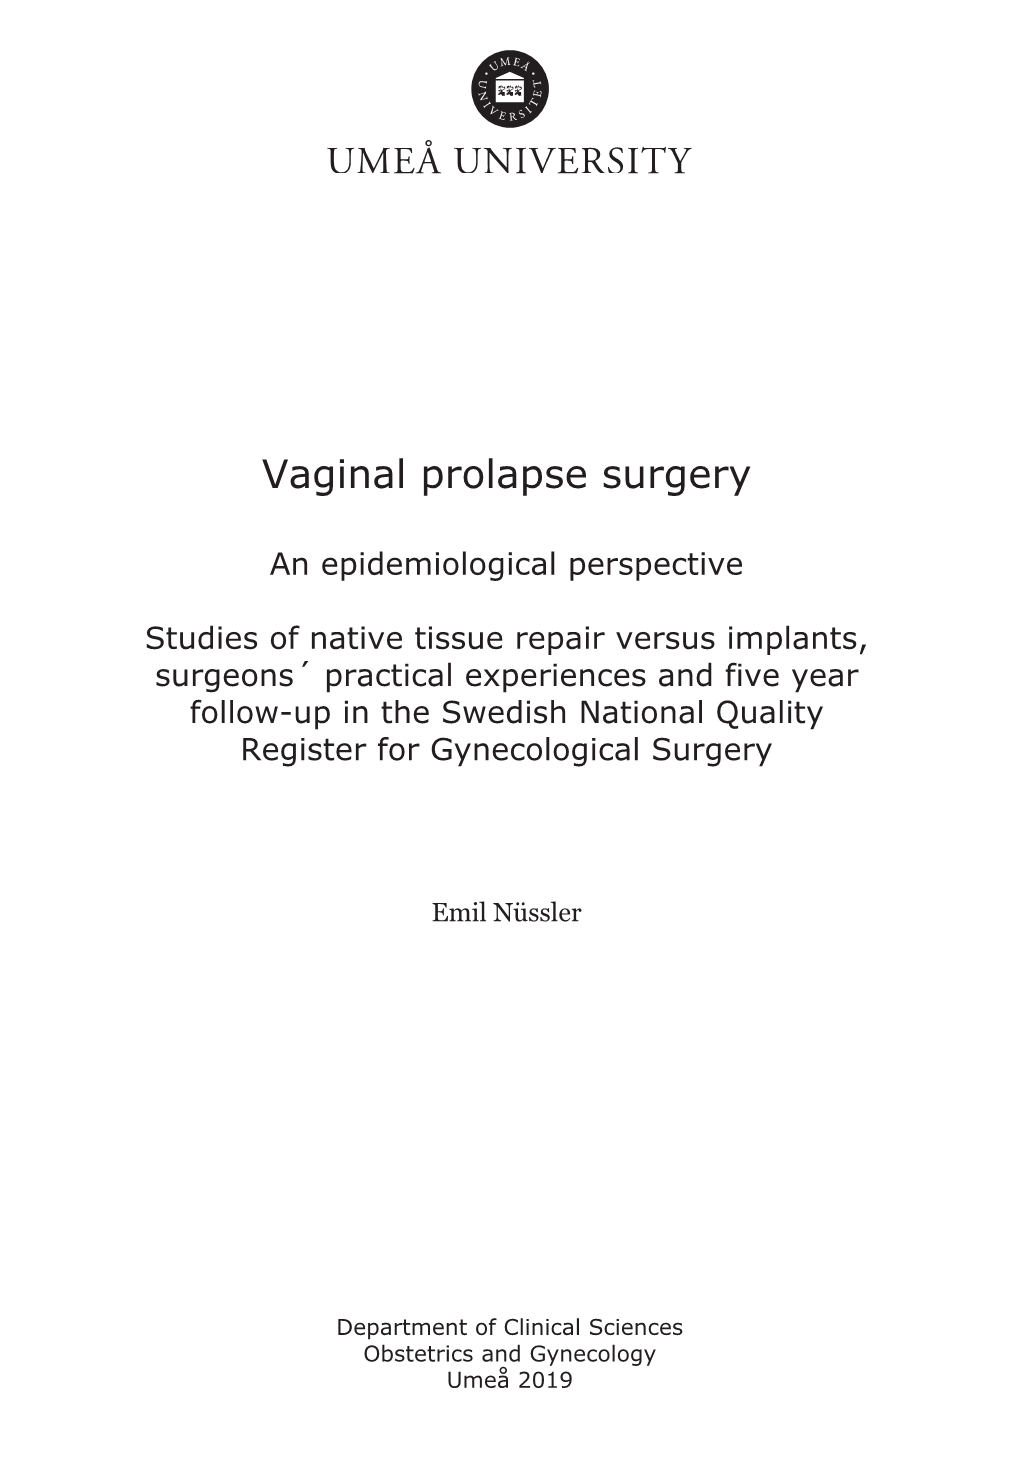 Vaginal Prolapse Surgery